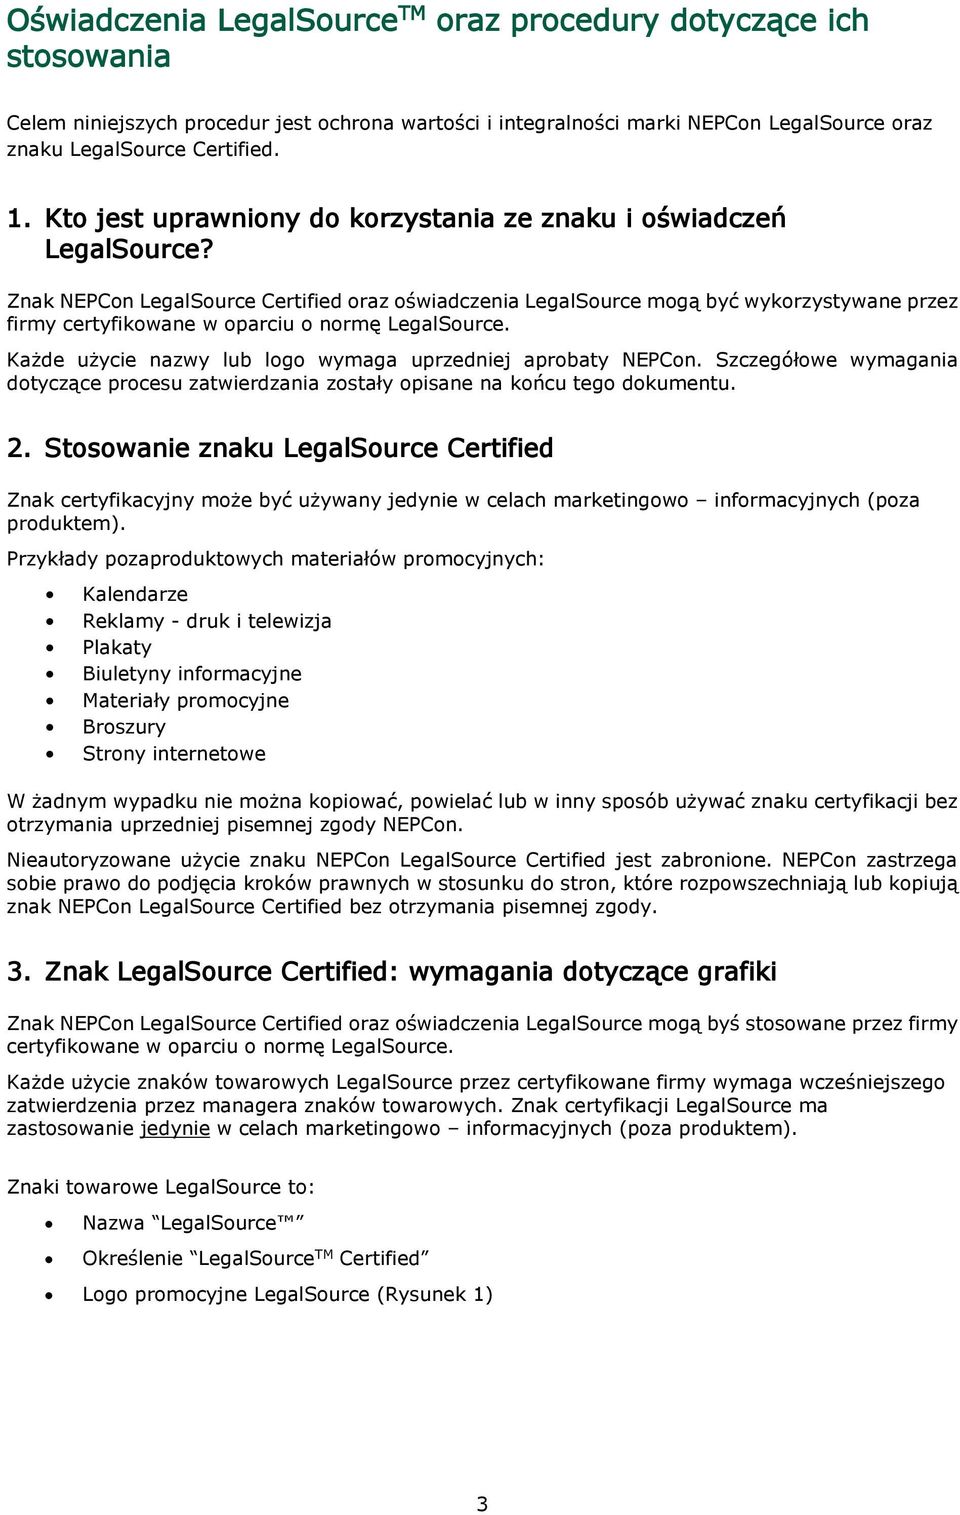 Znak NEPCon LegalSource Certified oraz oświadczenia LegalSource mogą być wykorzystywane przez firmy certyfikowane w oparciu o normę LegalSource.